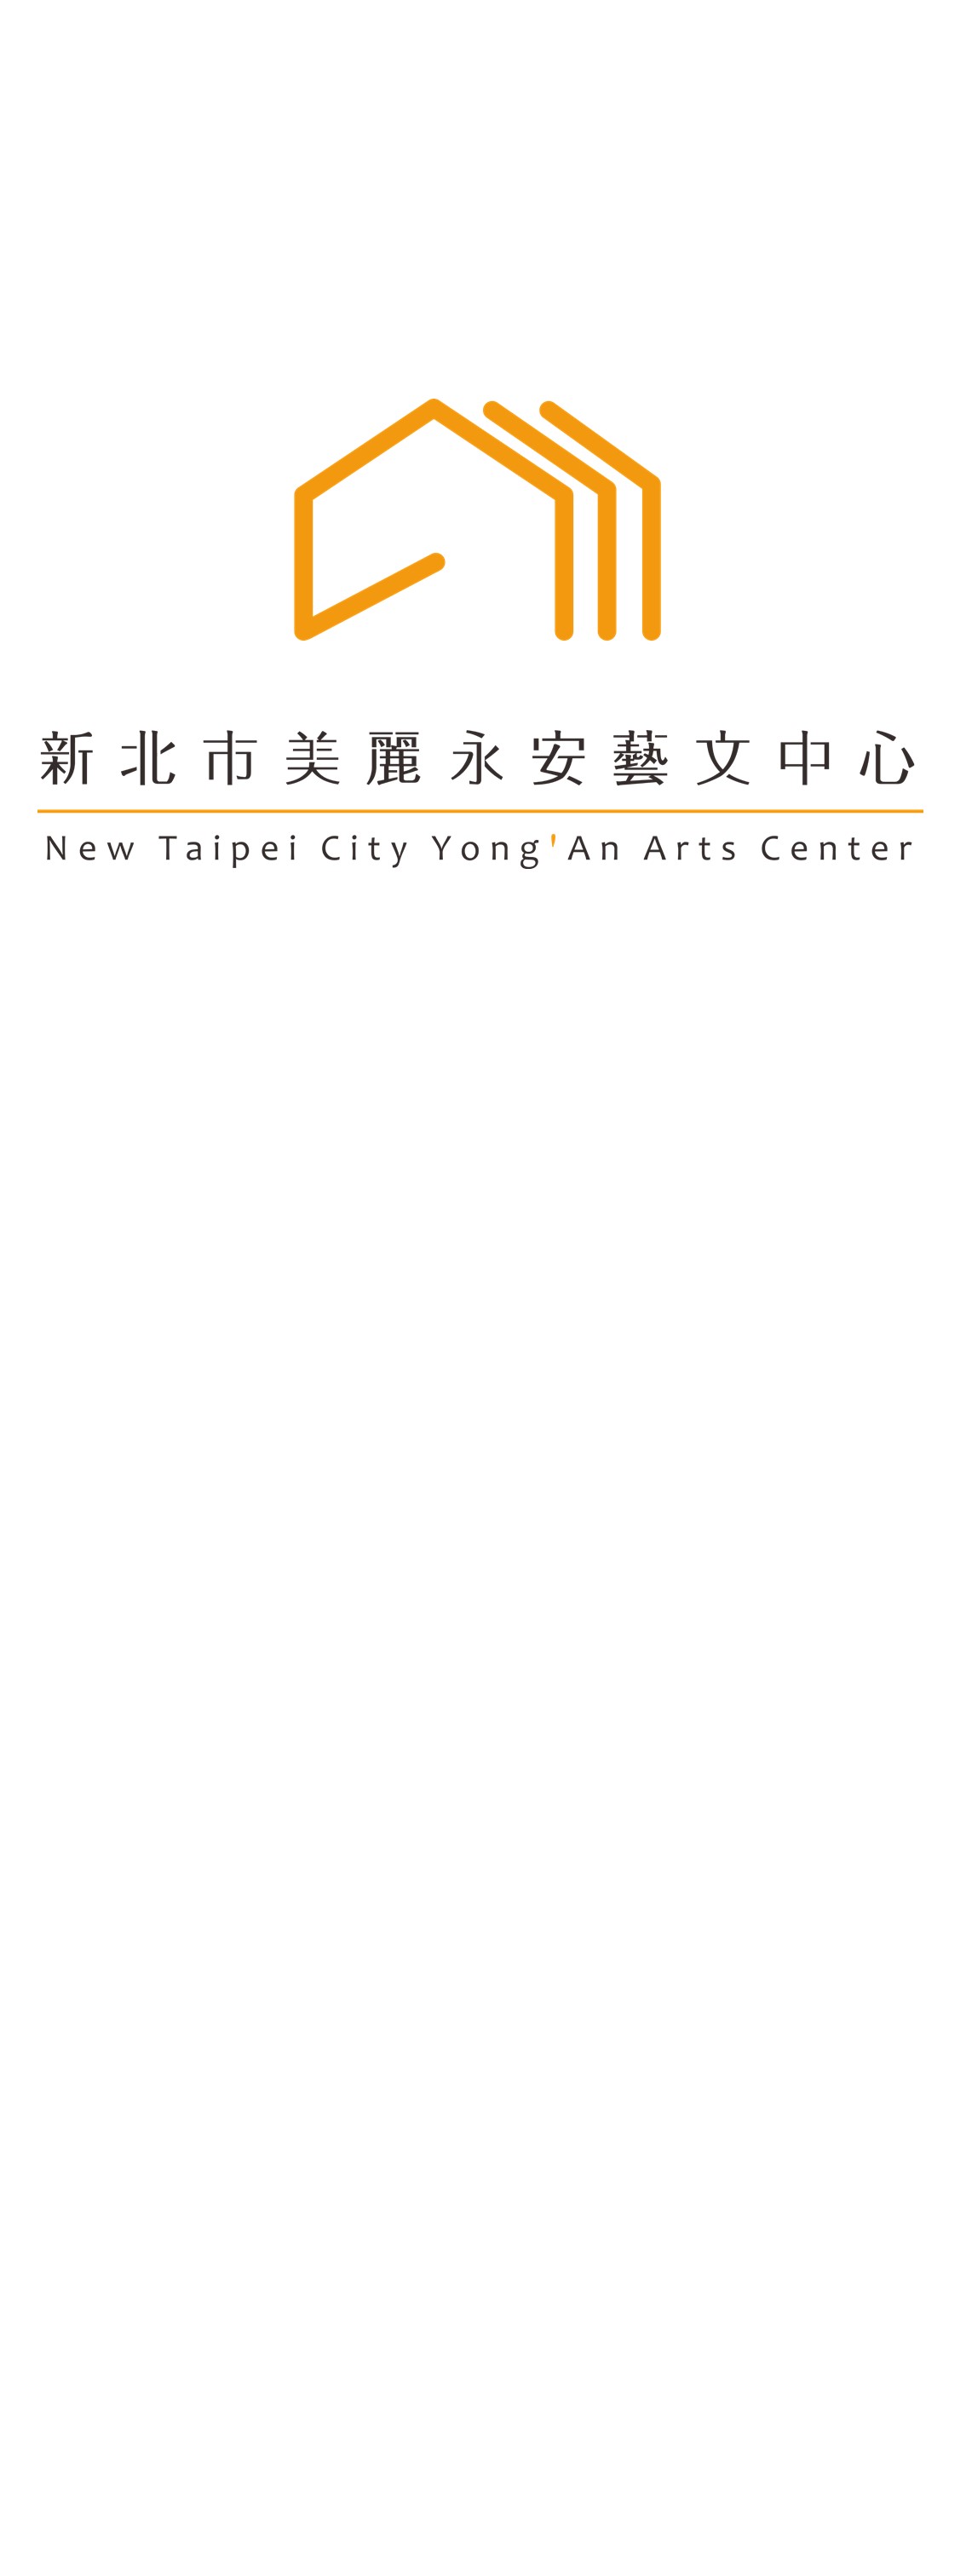 New Taipei City Beauty Forever Living Art Center